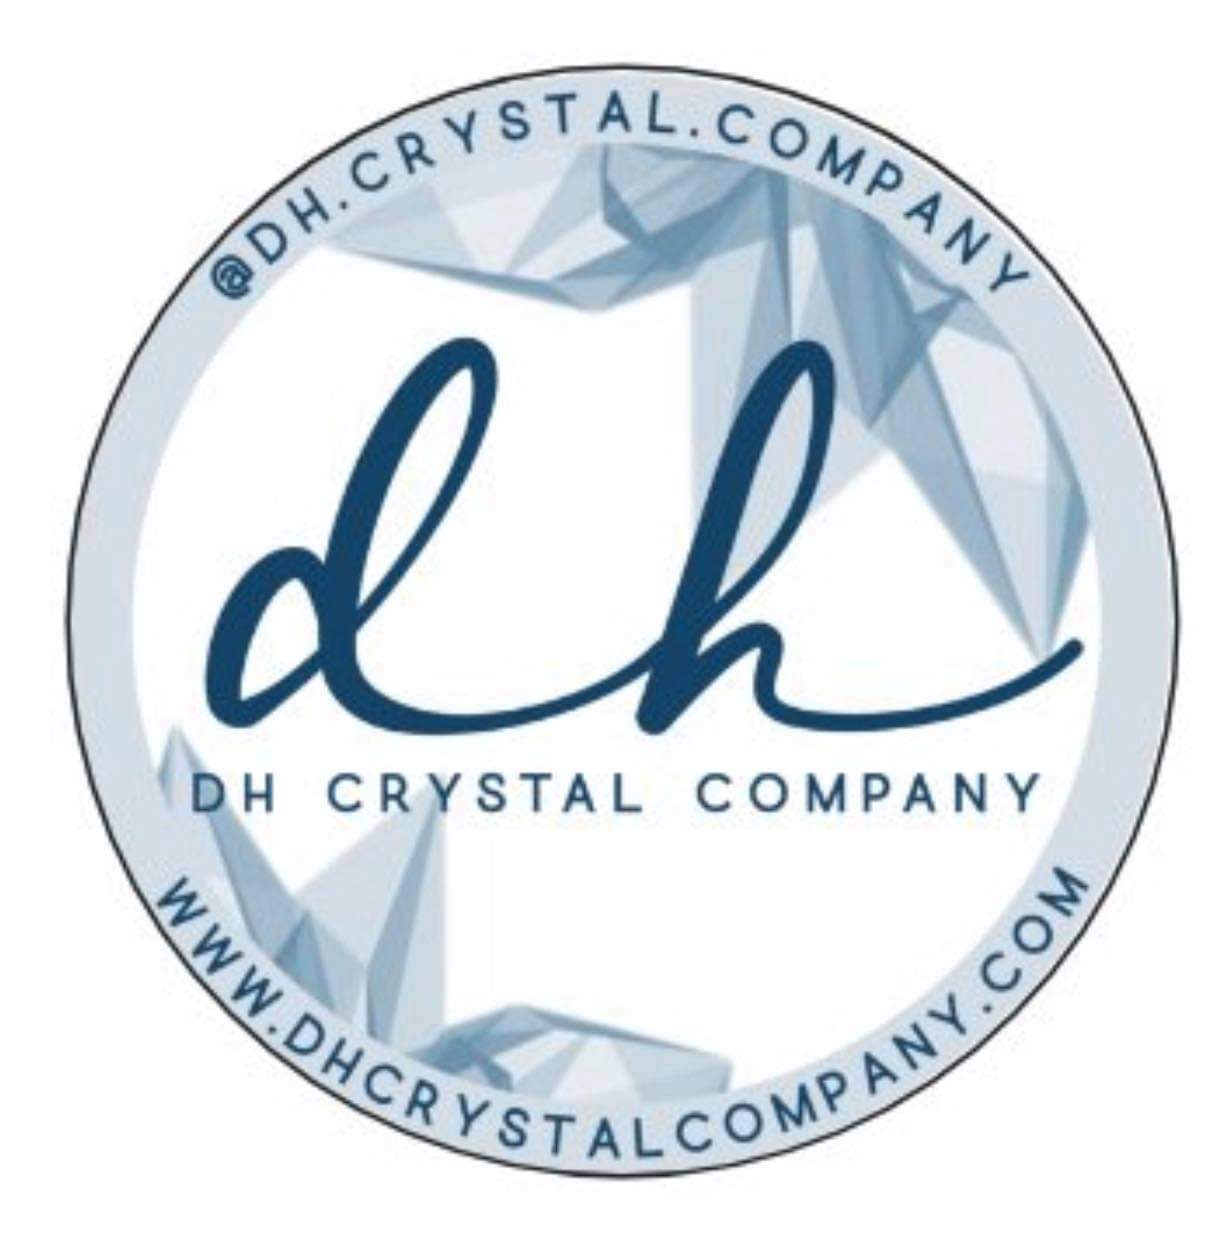 DH Crystal Company